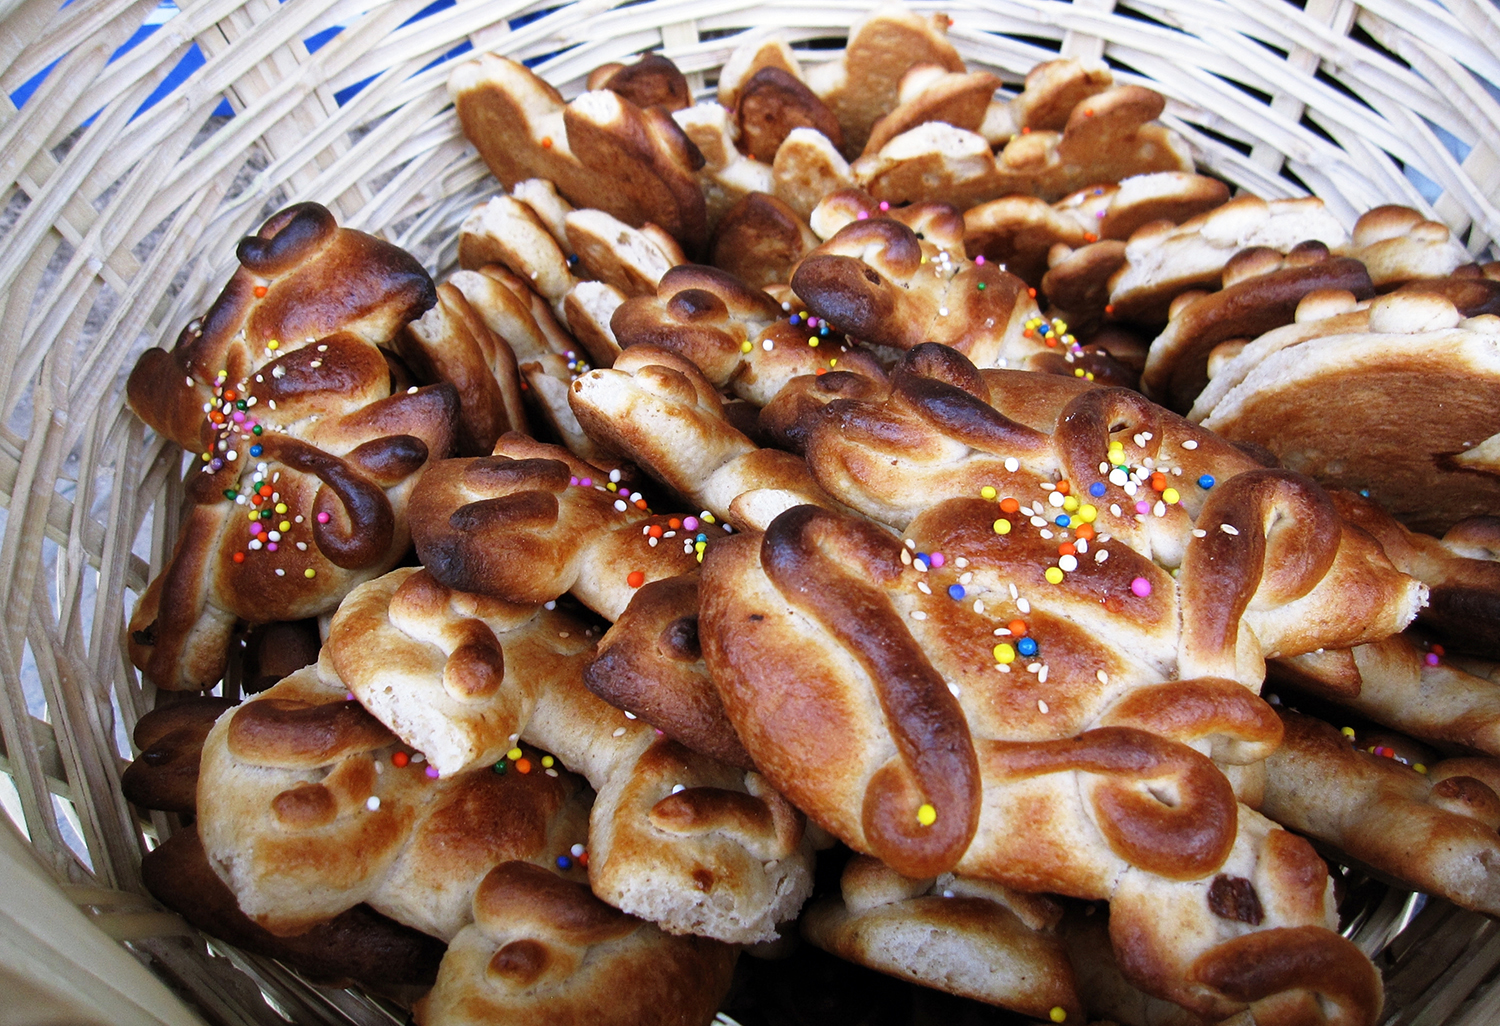 T'anta Wawa Traditional Sweet Bread From Peru